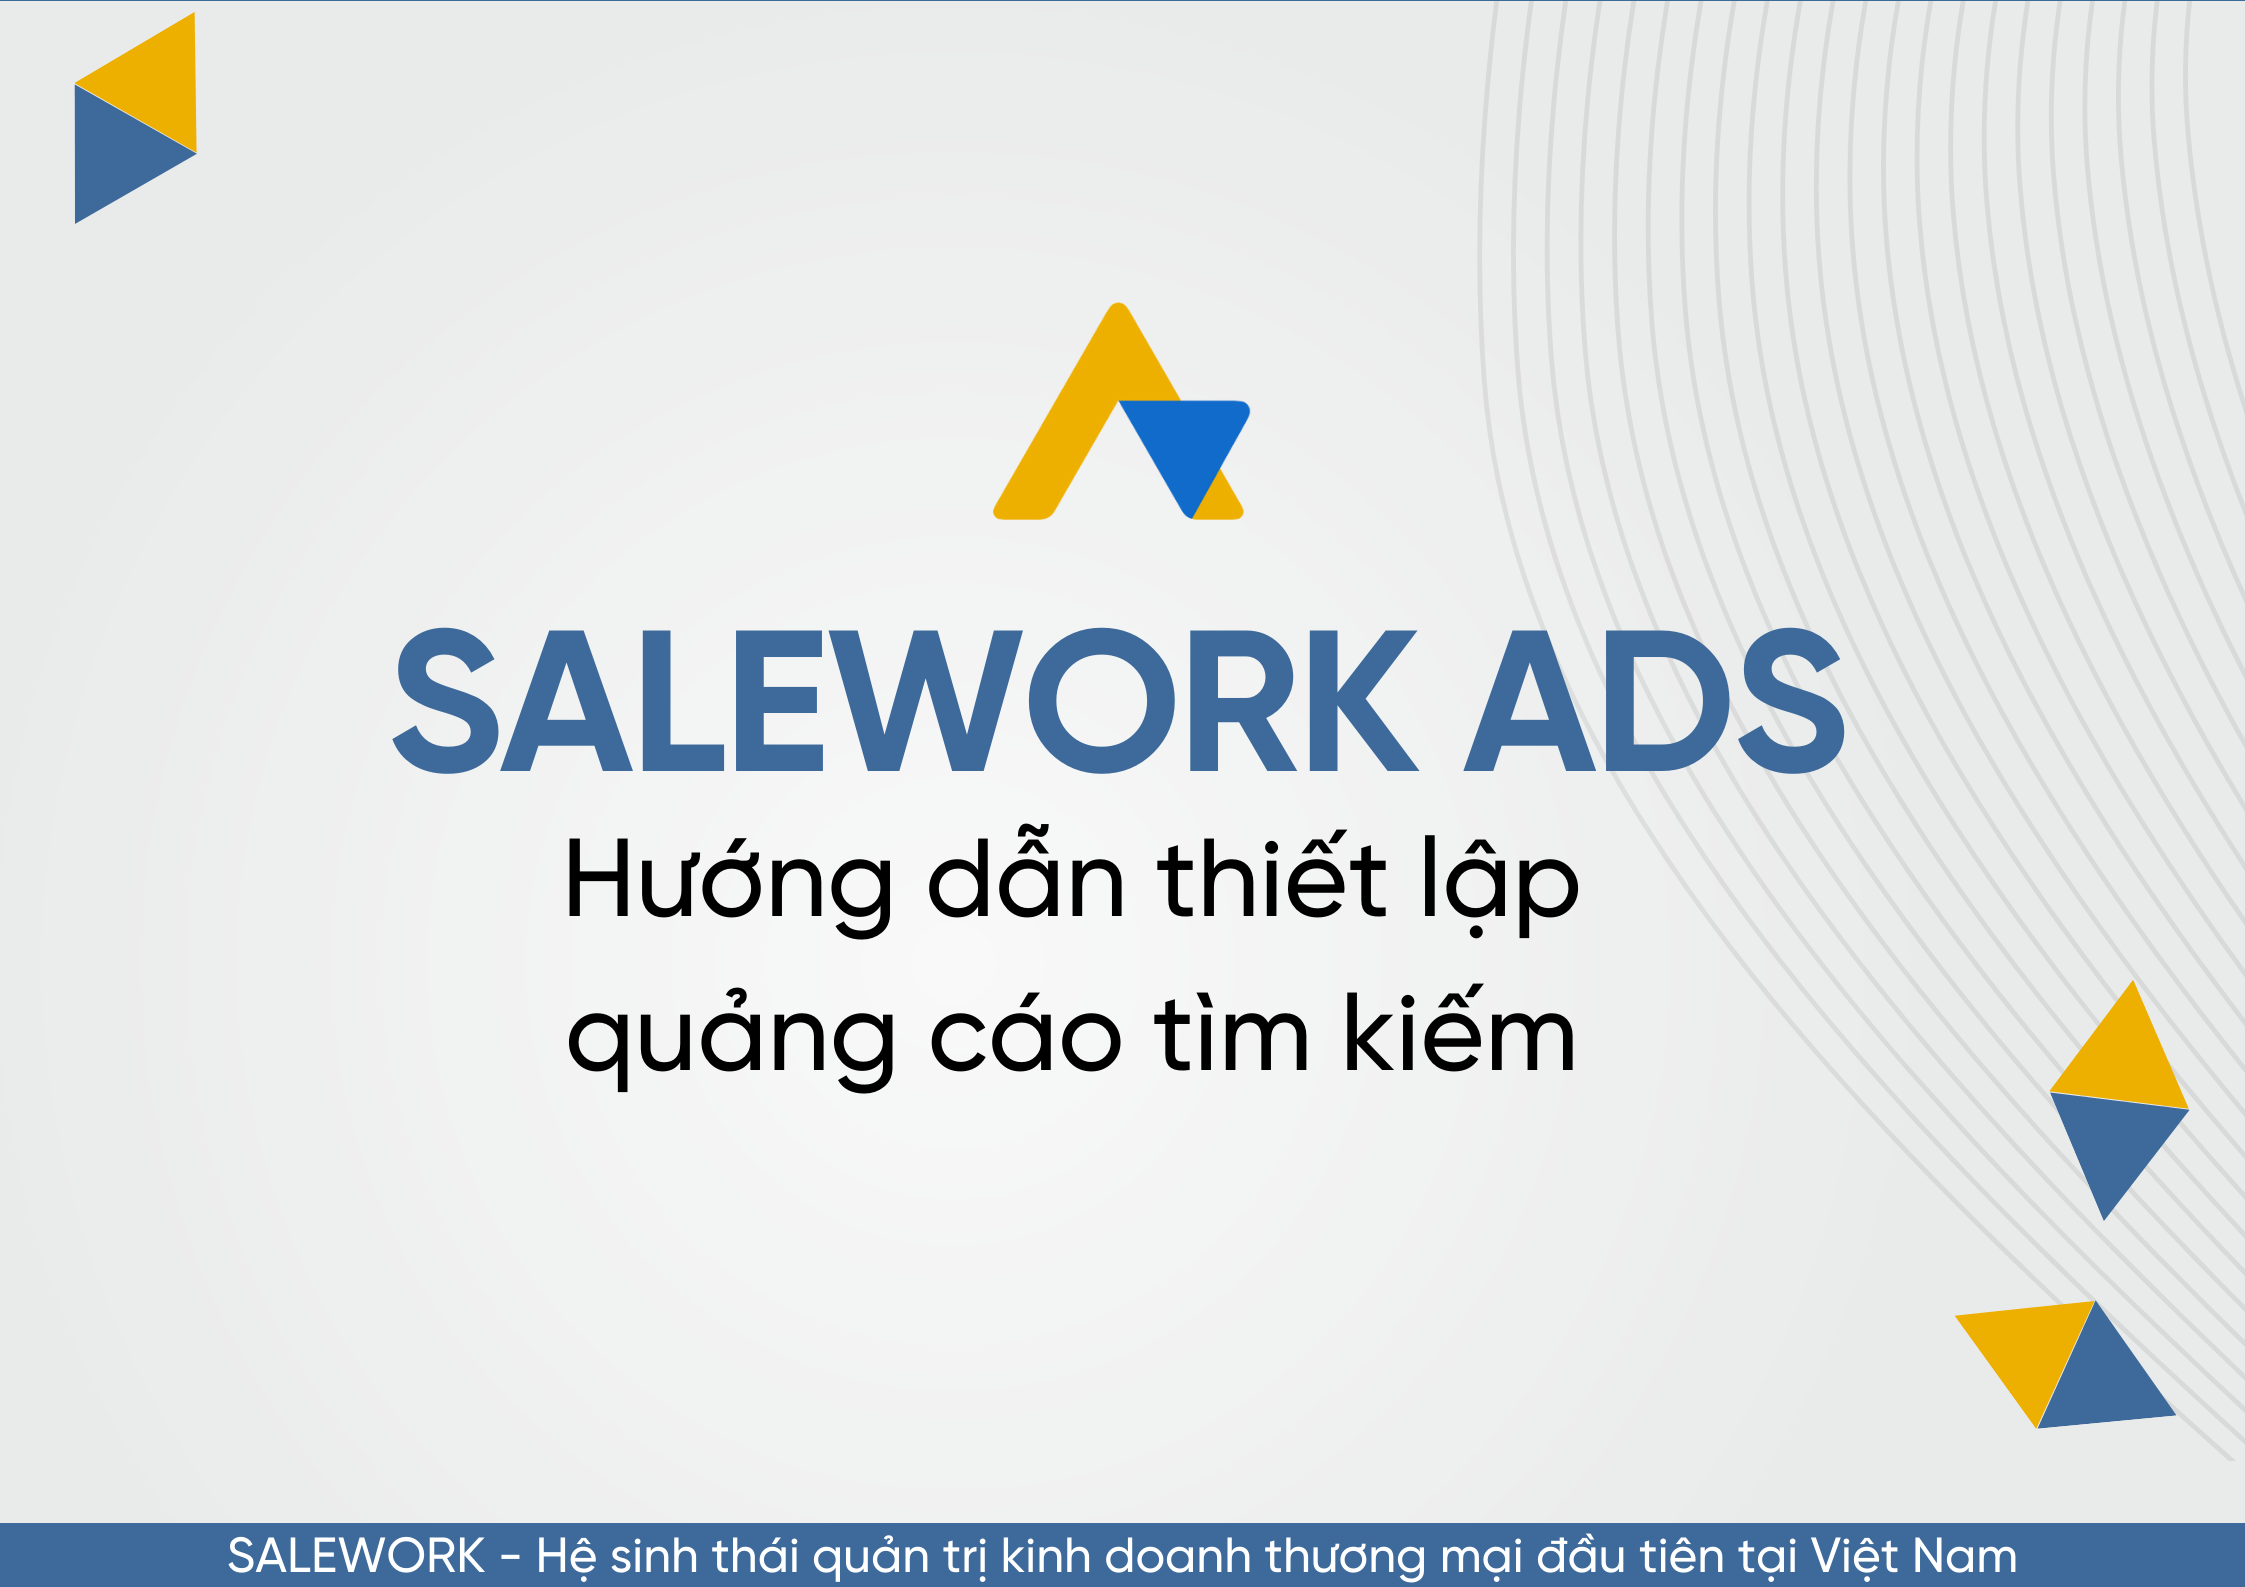 Hướng dẫn thiết lập quảng cáo tìm kiếm tại Salework Ads - 99